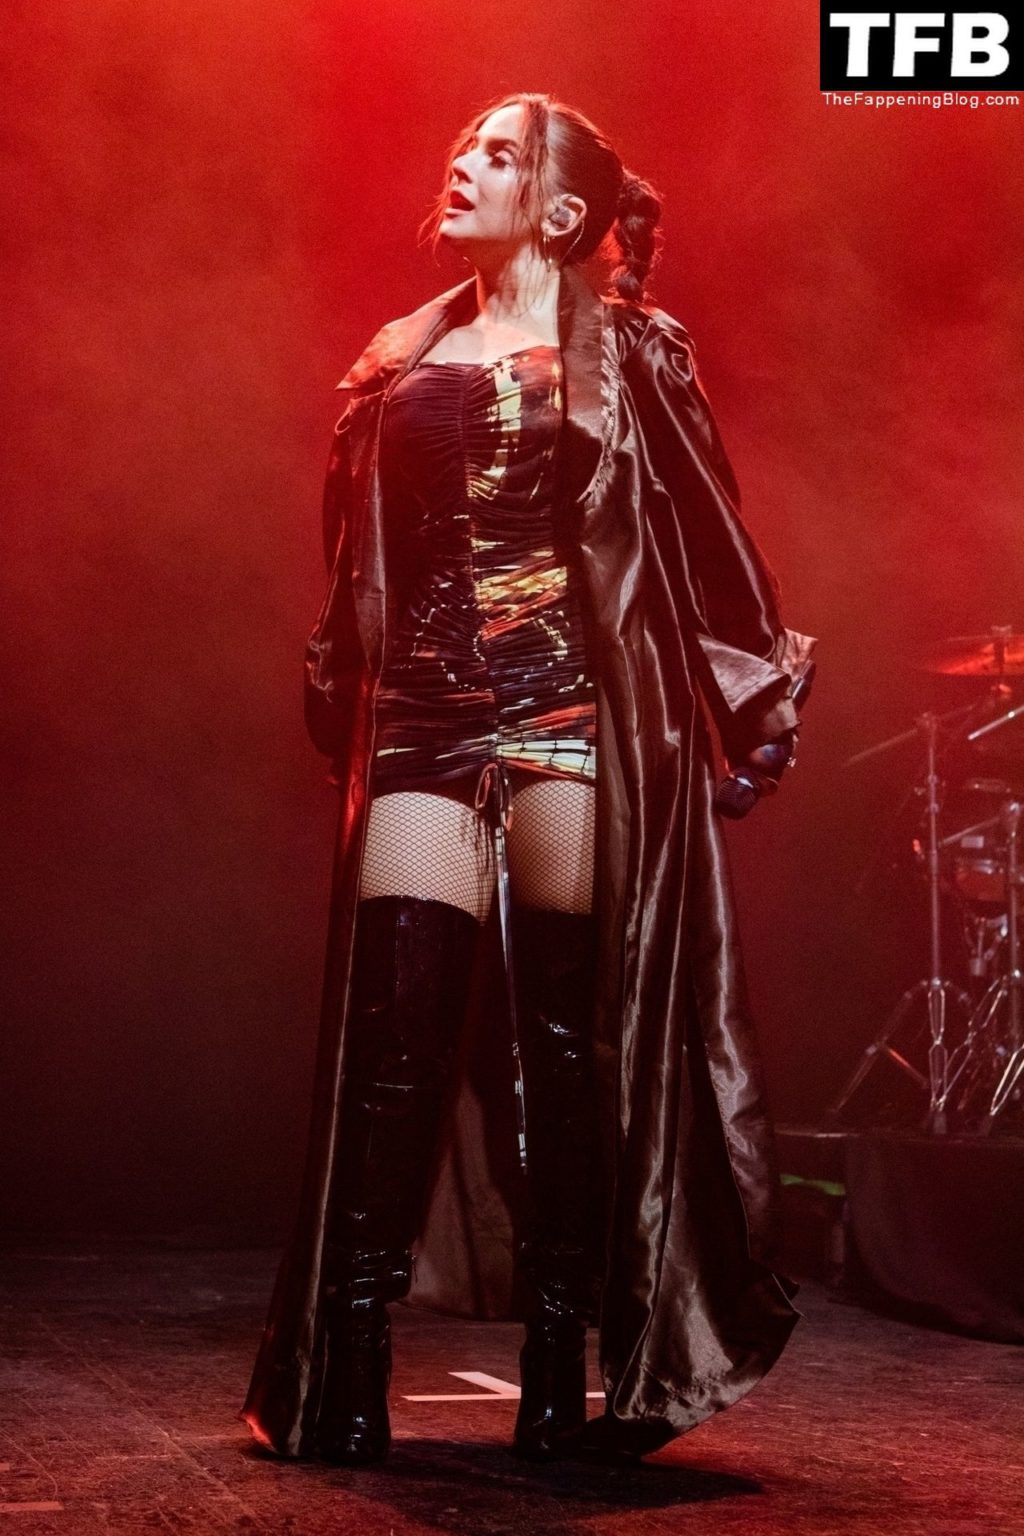 JoJo Flashes Her Underwear Onstage in Birmingham (23 Photos)